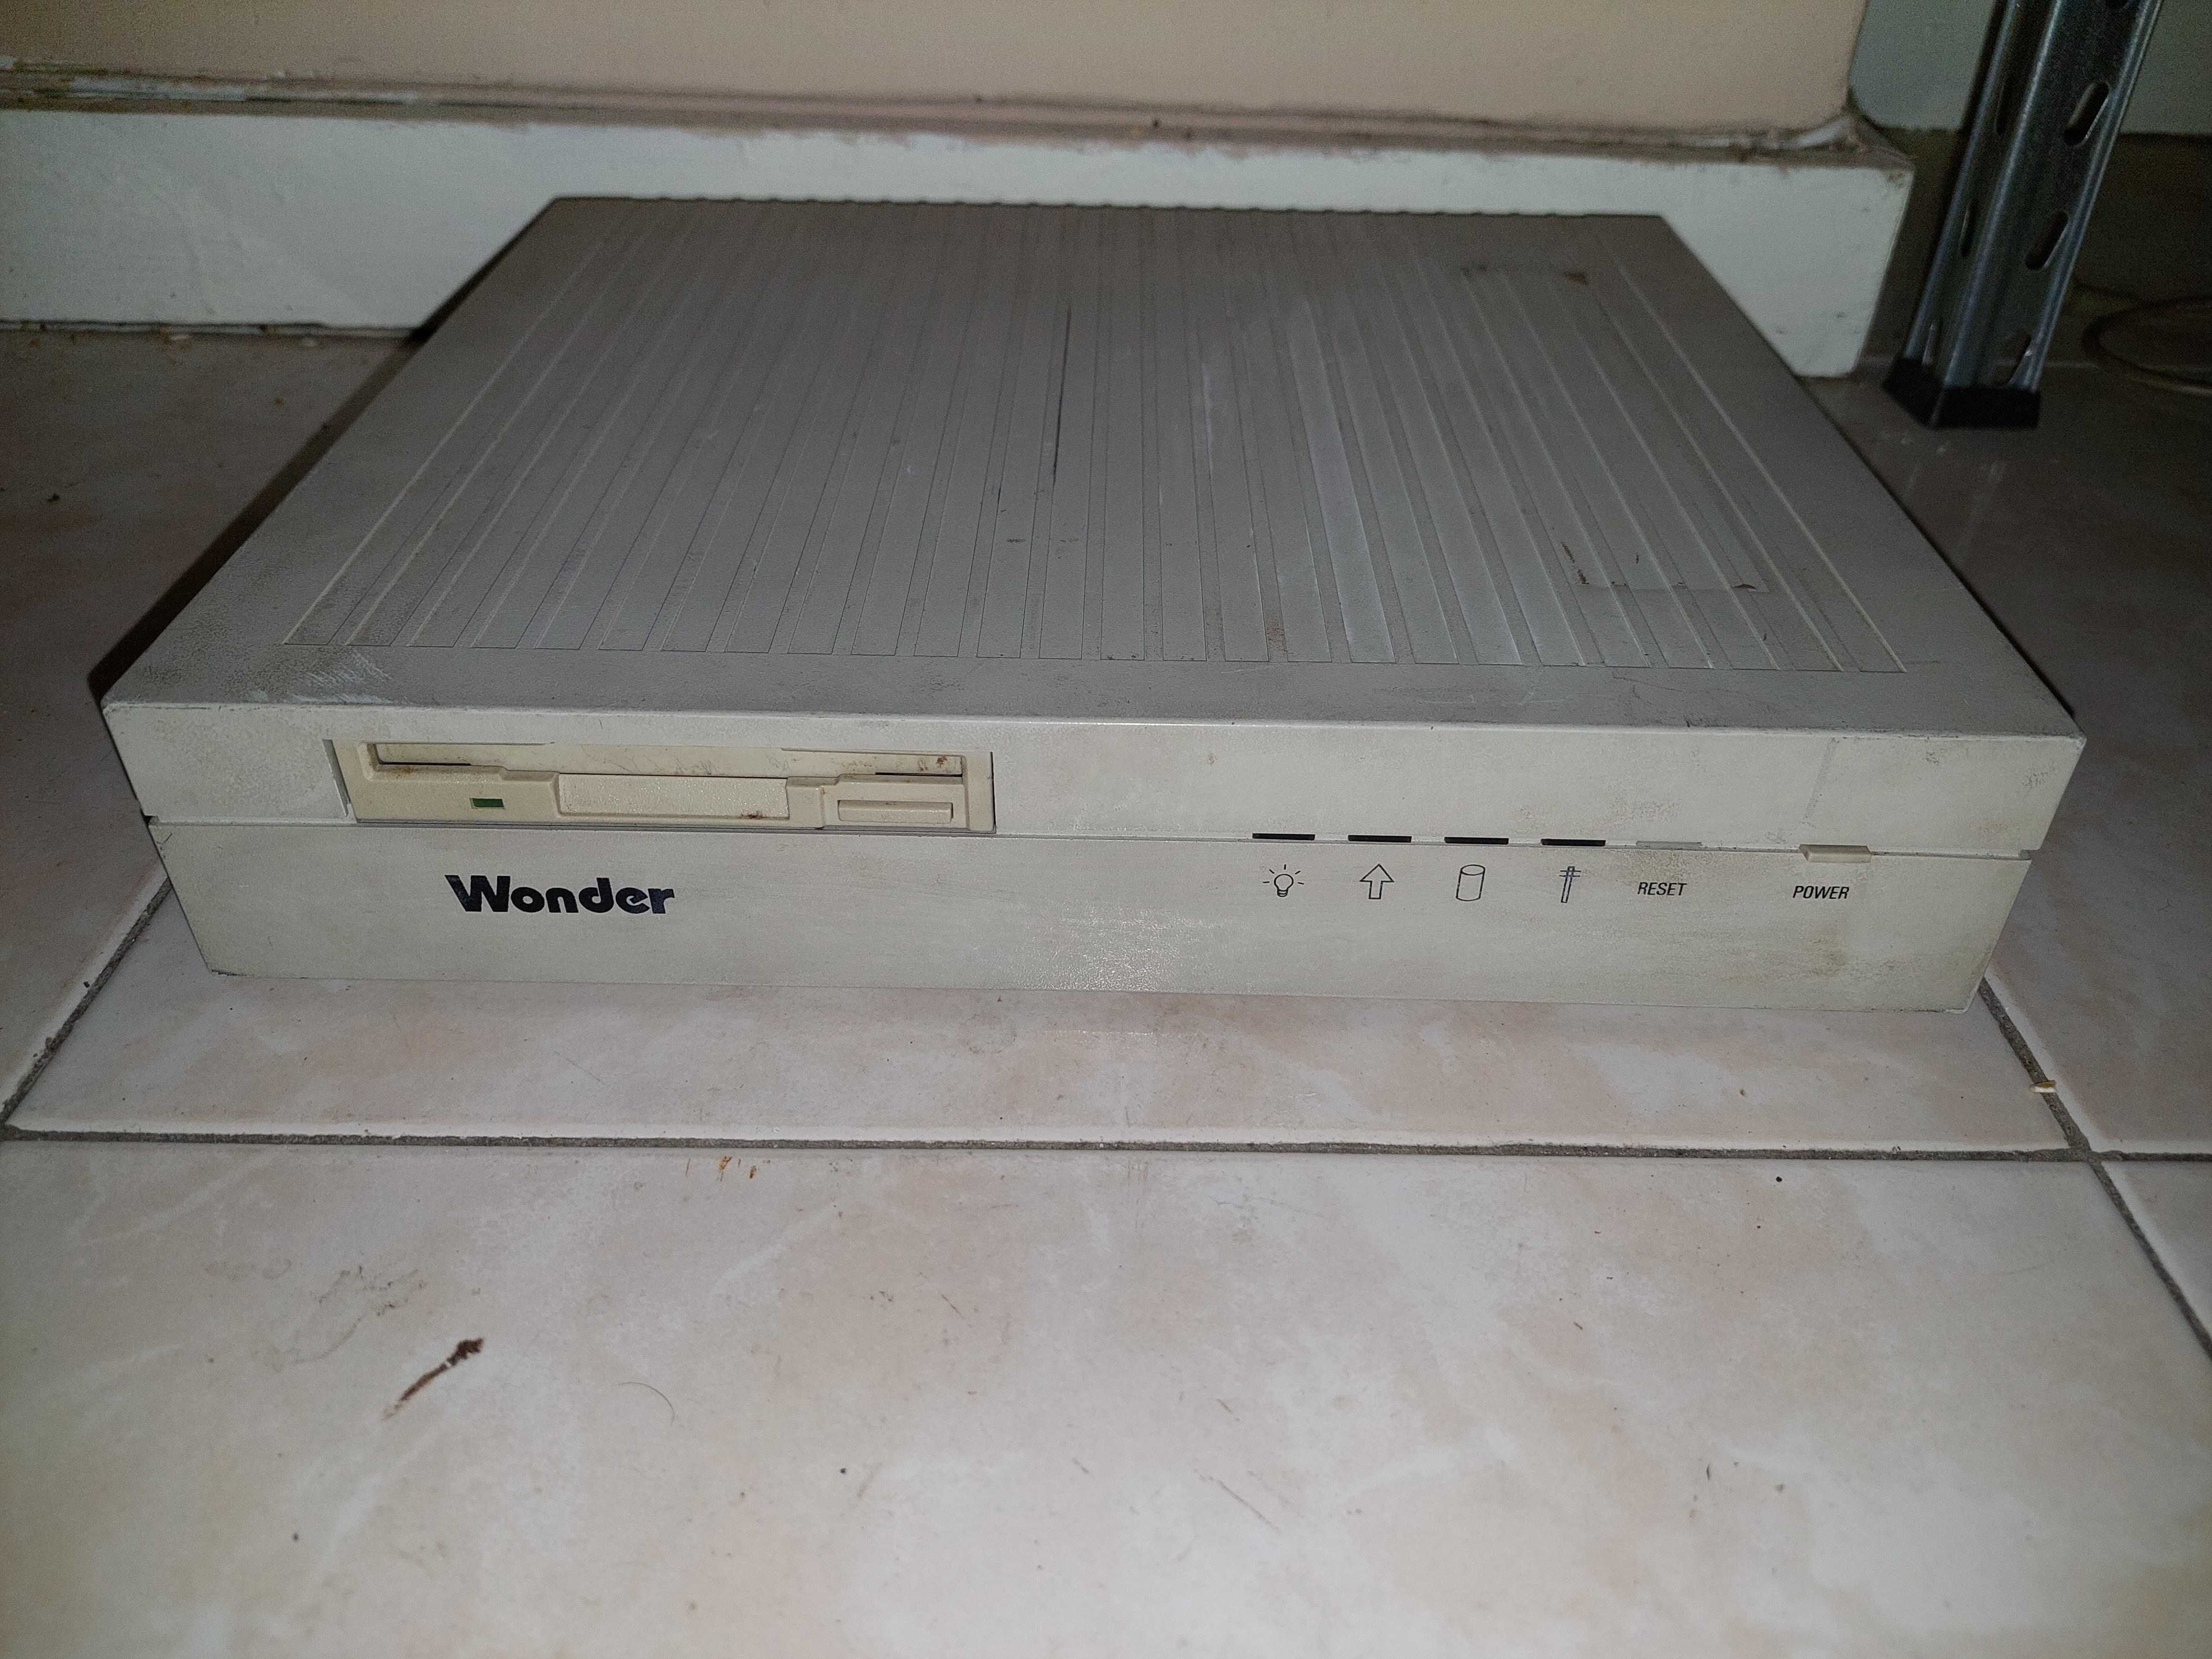 Computador intel 386 Wonder Retro Vintage